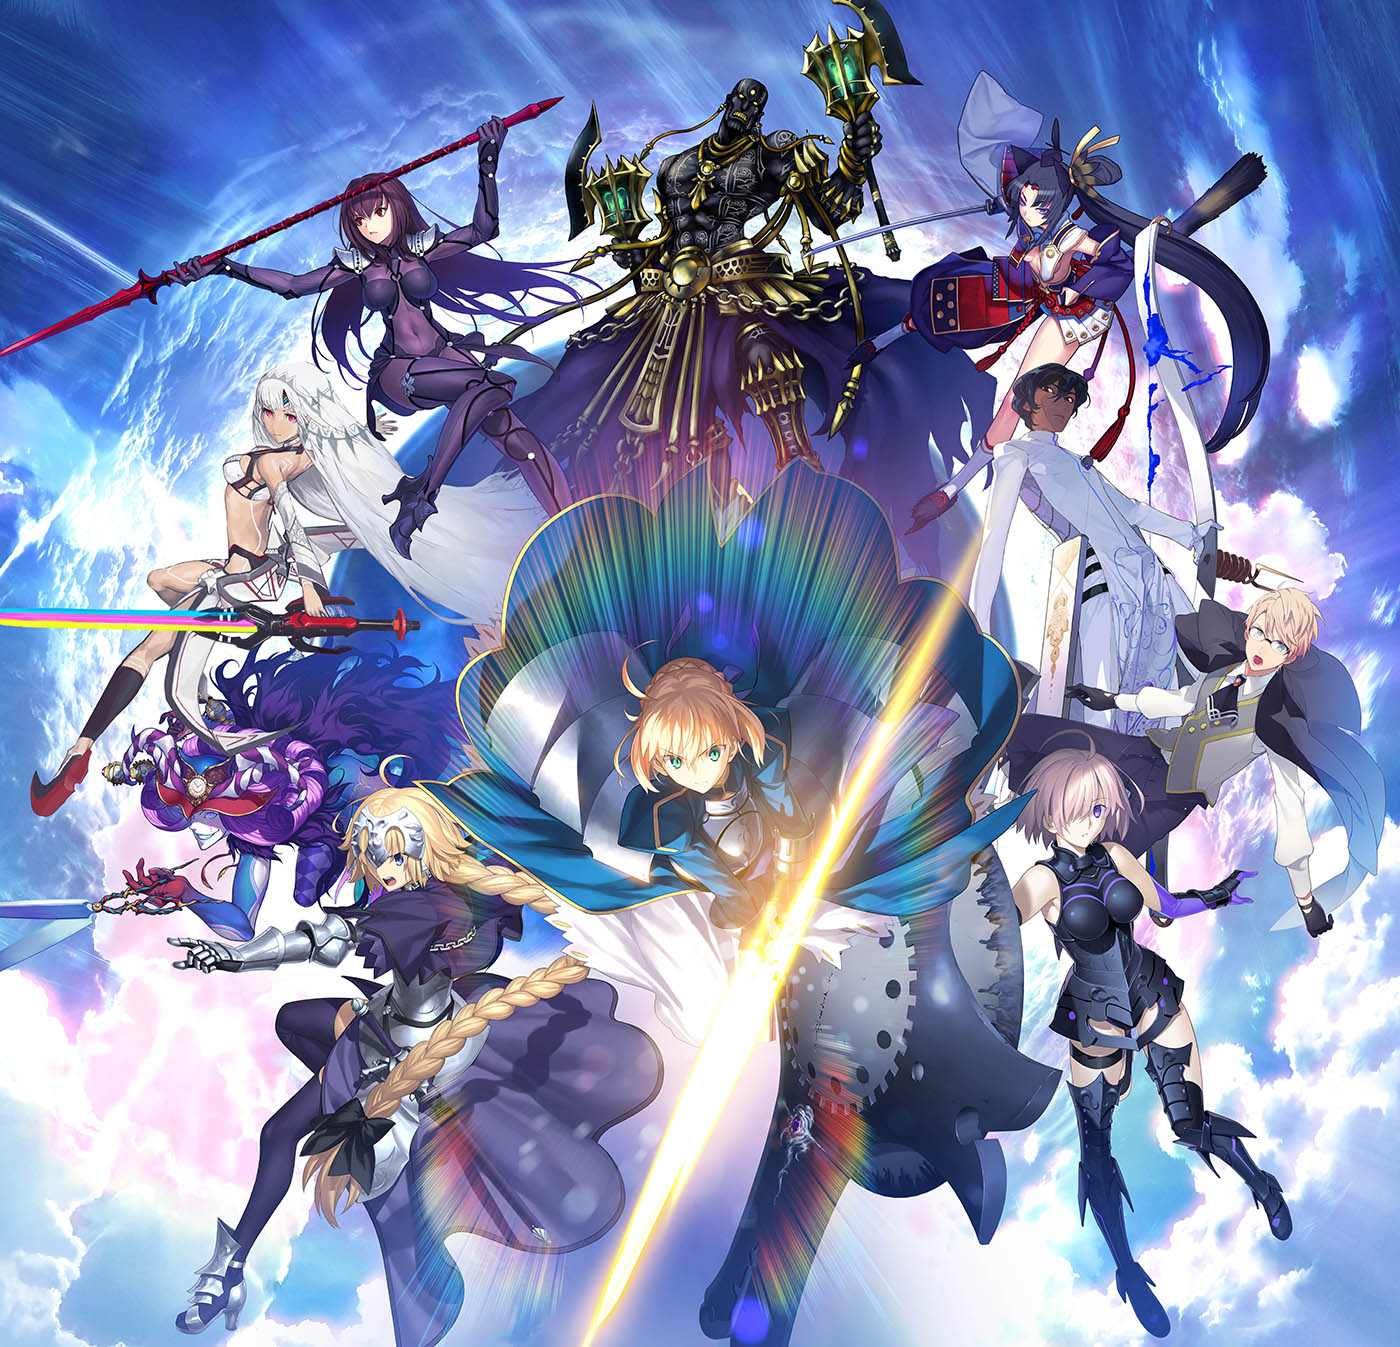 Ereshkigal | Fate Grand Order Anime Wiki | Fandom